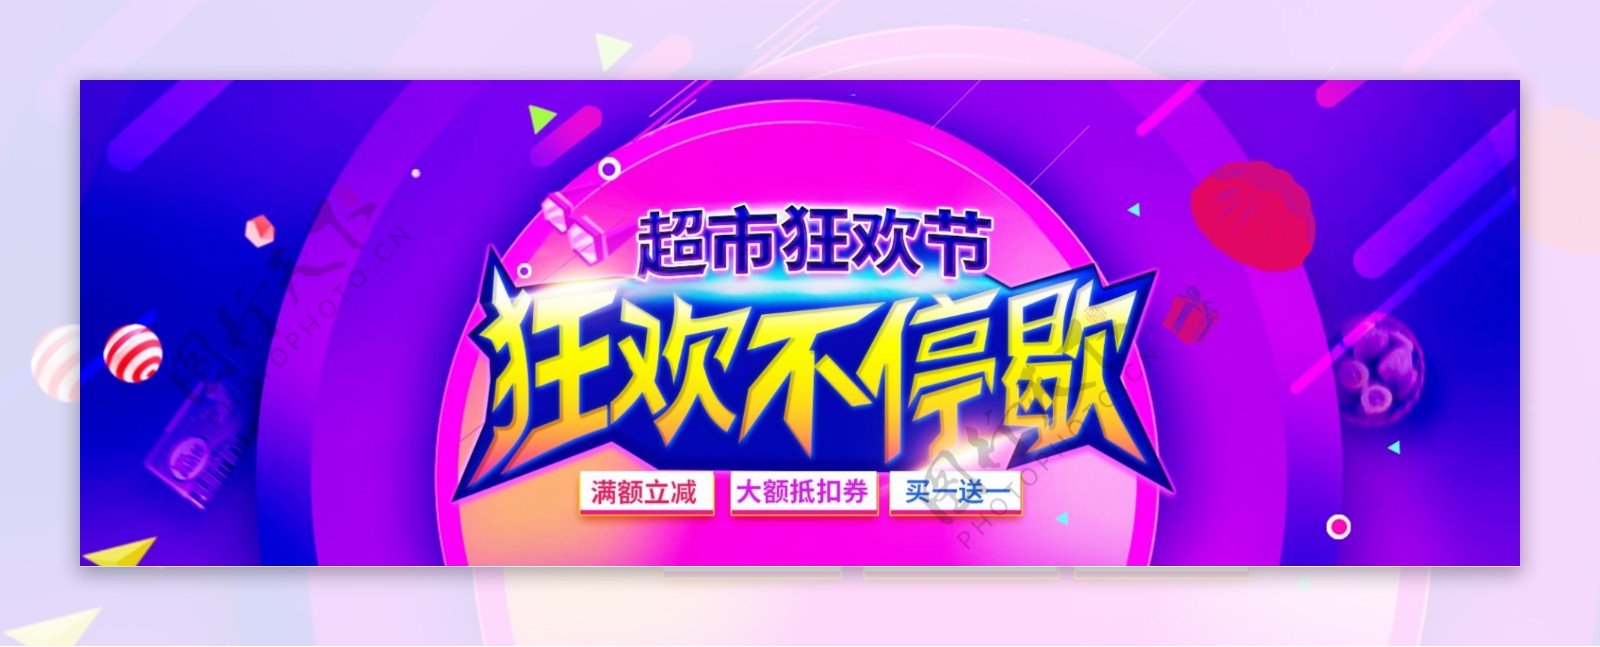 紫色酷炫超市狂欢节天猫超市淘宝促销电商海报banner